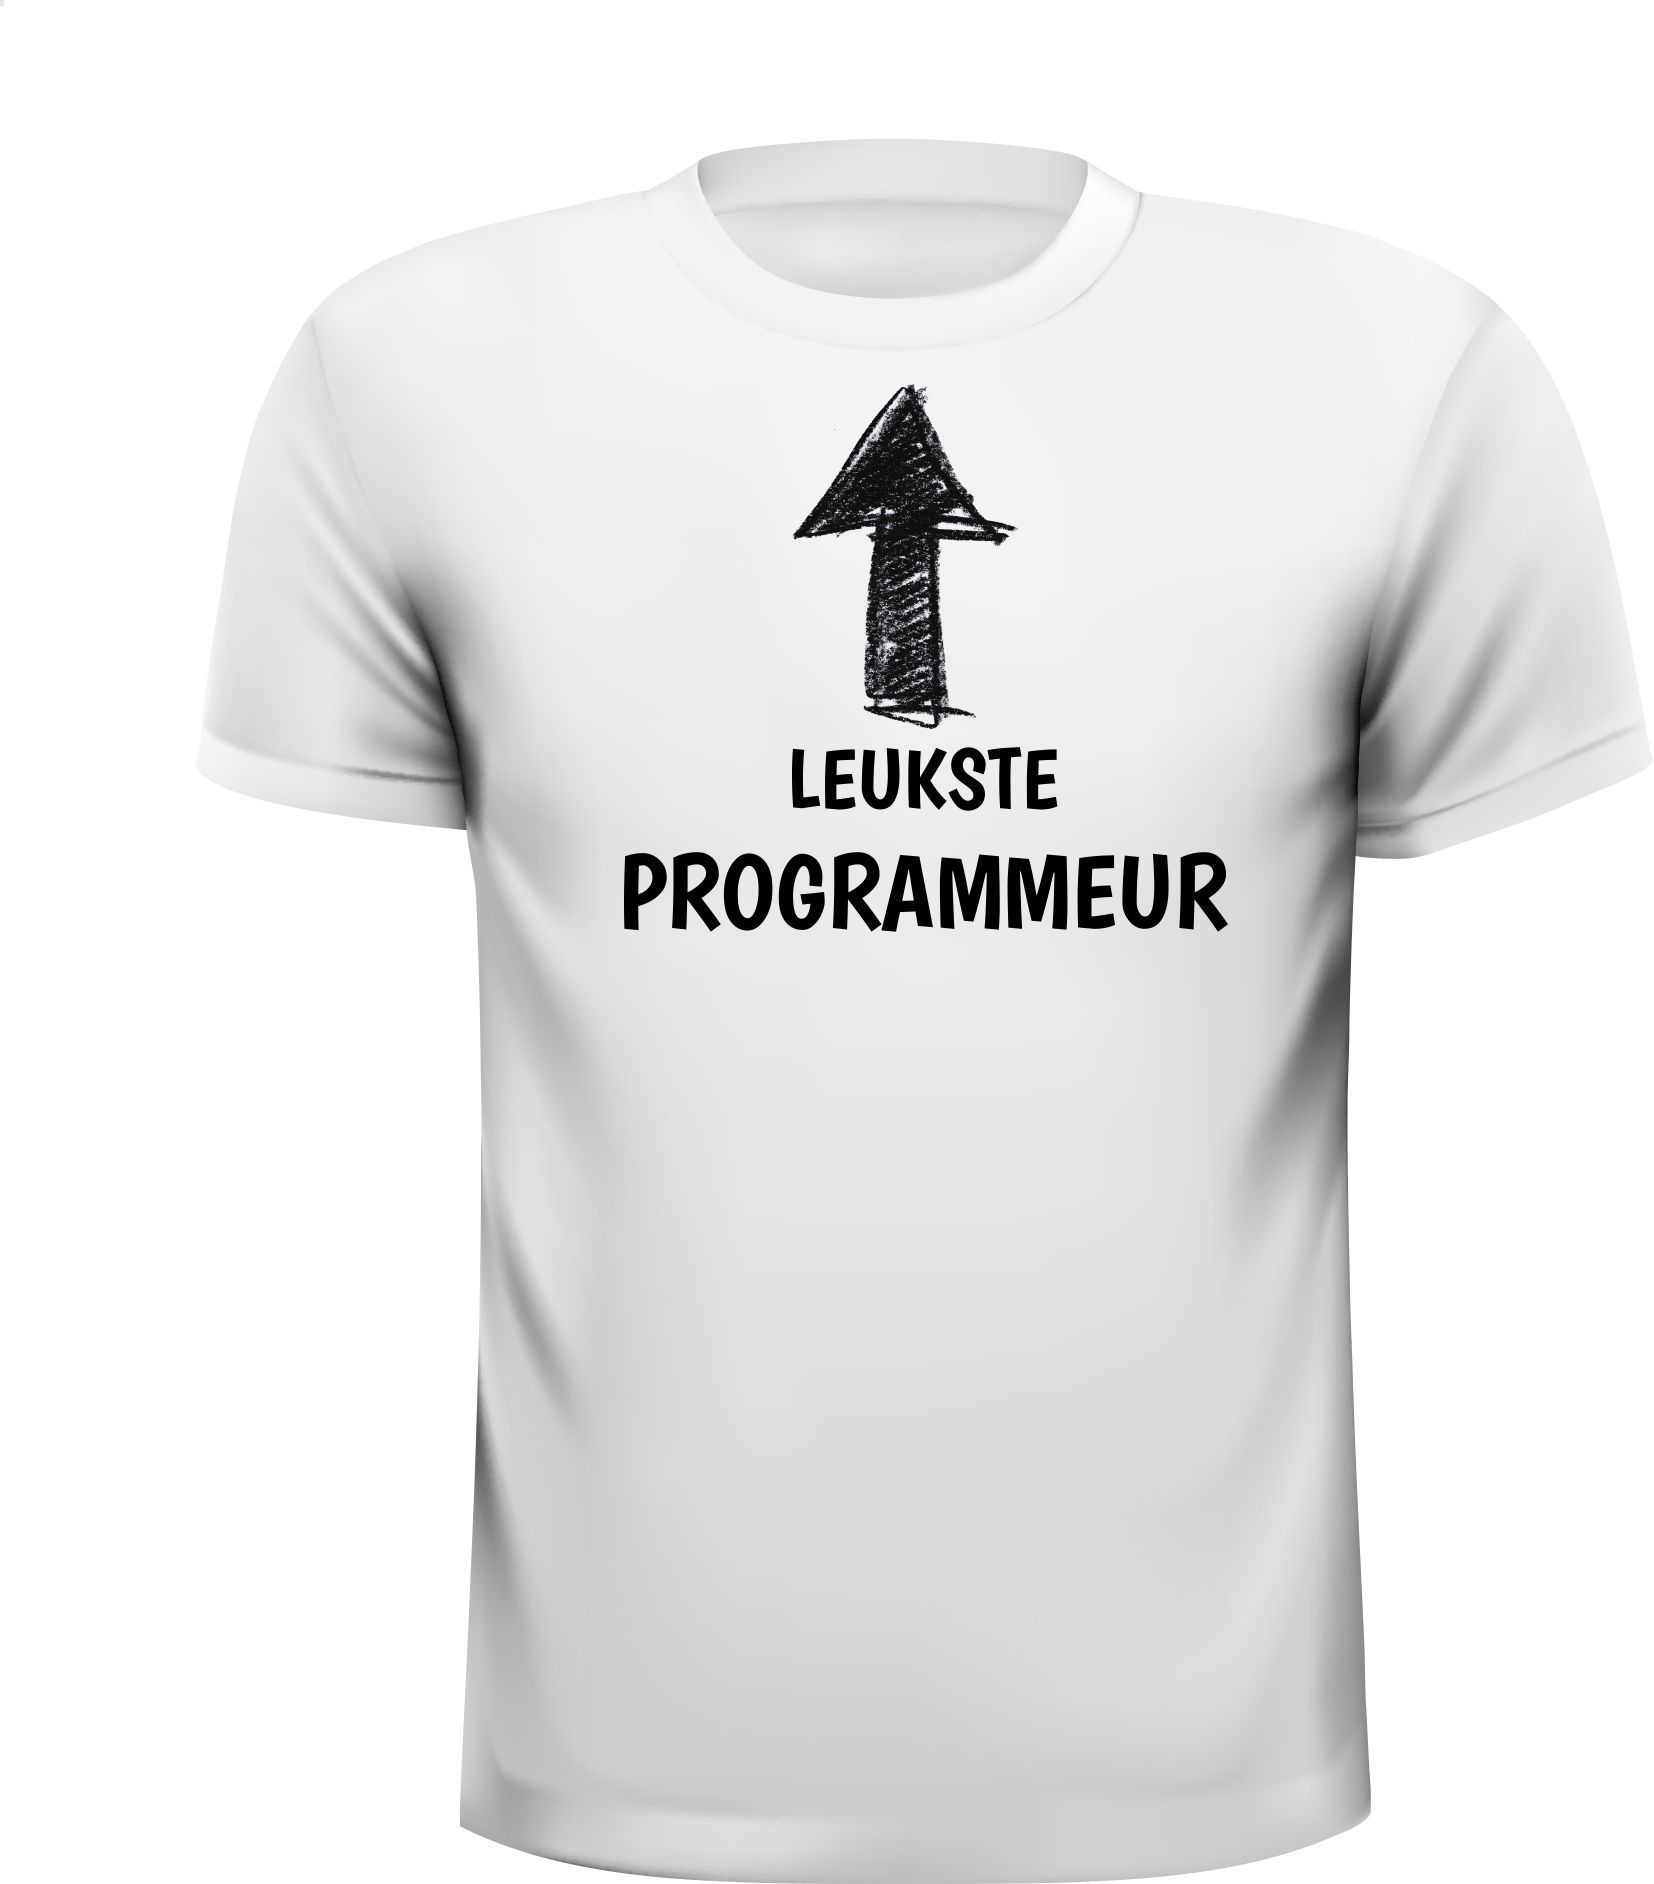 T-shirt leukste programmeur